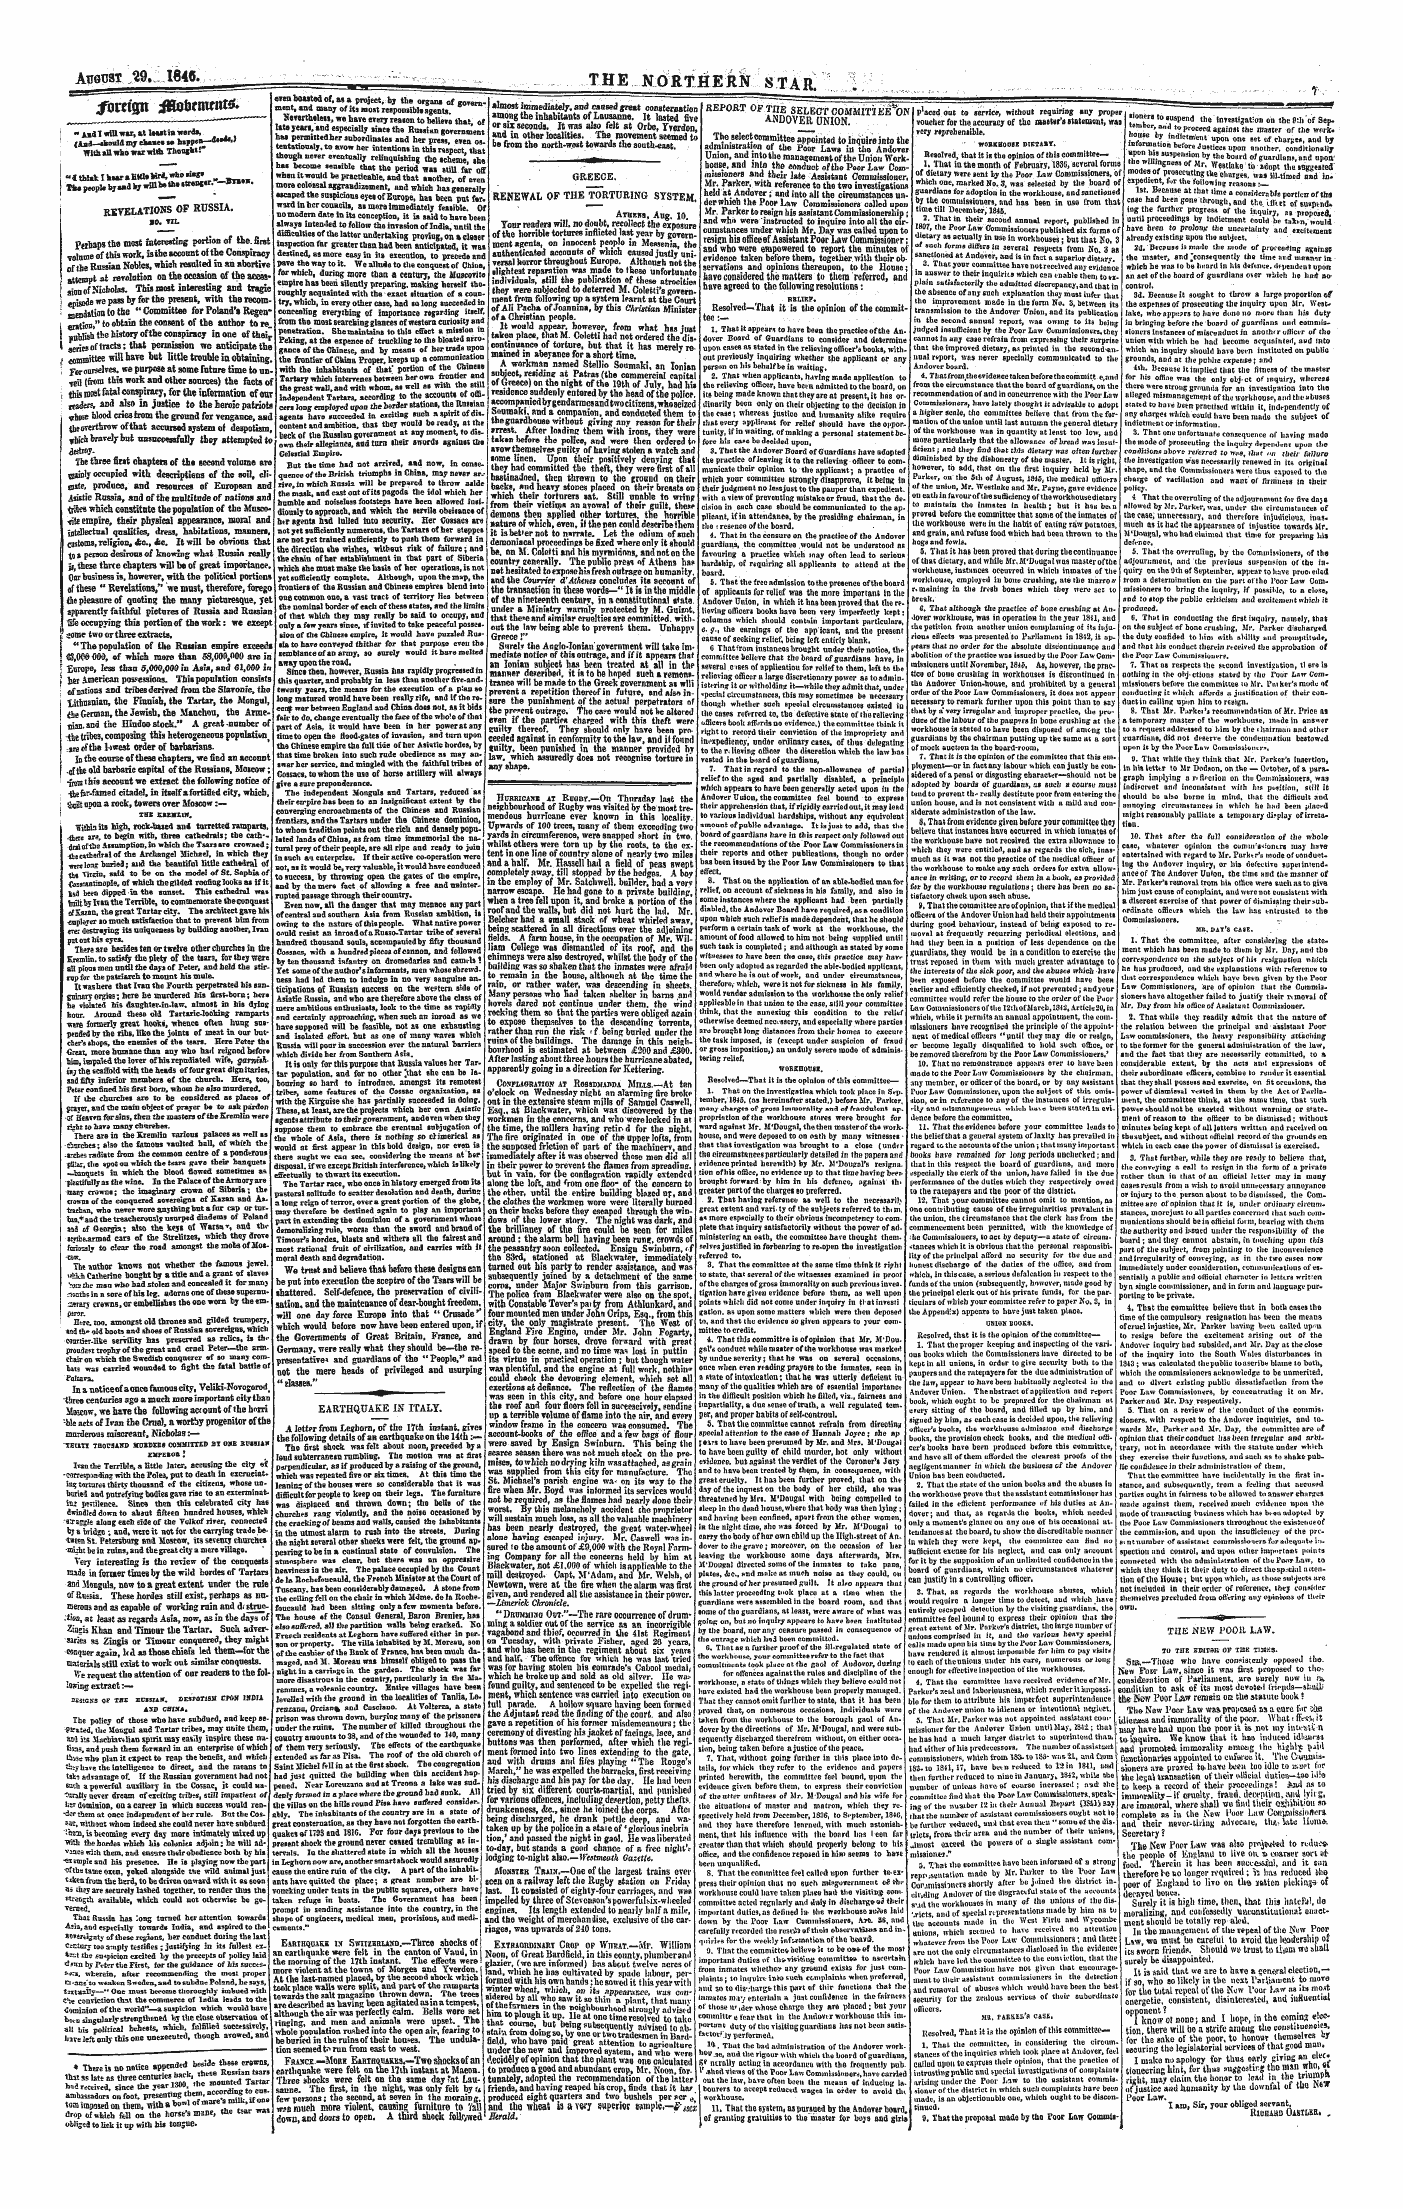 Northern Star (1837-1852): jS F Y, 1st edition - / Okfgn Jtatancttf*' - . '- ., , ' „ ¦ ,-, Jj^»»'"" I"-'" ¦ .I ,|&Lt;L'F ..... I.»1ww»W&Gt;Wiw 'Tfiirflom 42lflbfniftlt&